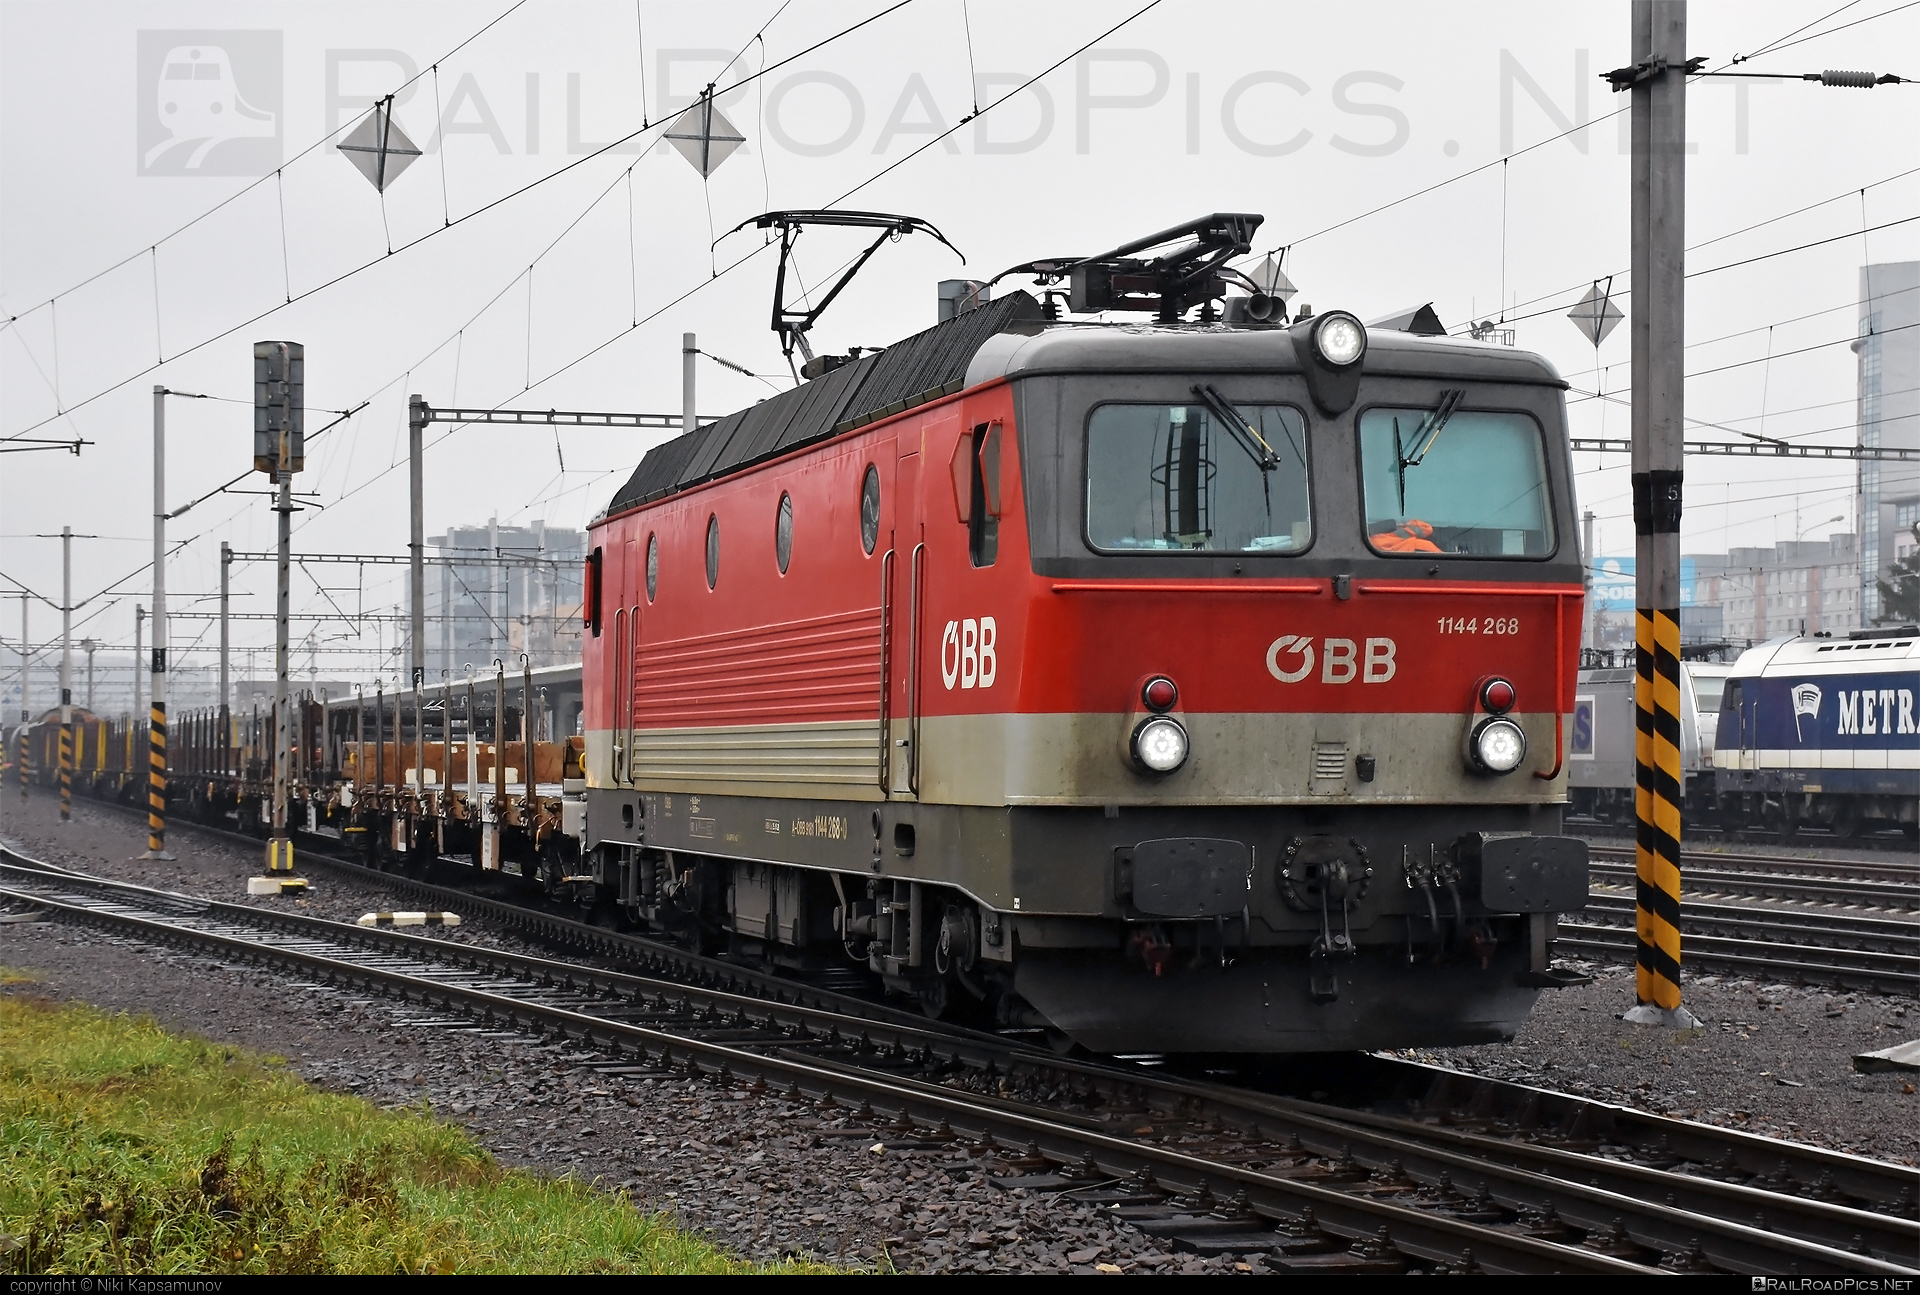 SGP ÖBB Class 1144 - 1144 268 operated by Rail Cargo Austria AG #obb #obbclass1144 #osterreichischebundesbahnen #rcw #sgp #sgp1144 #simmeringgrazpauker